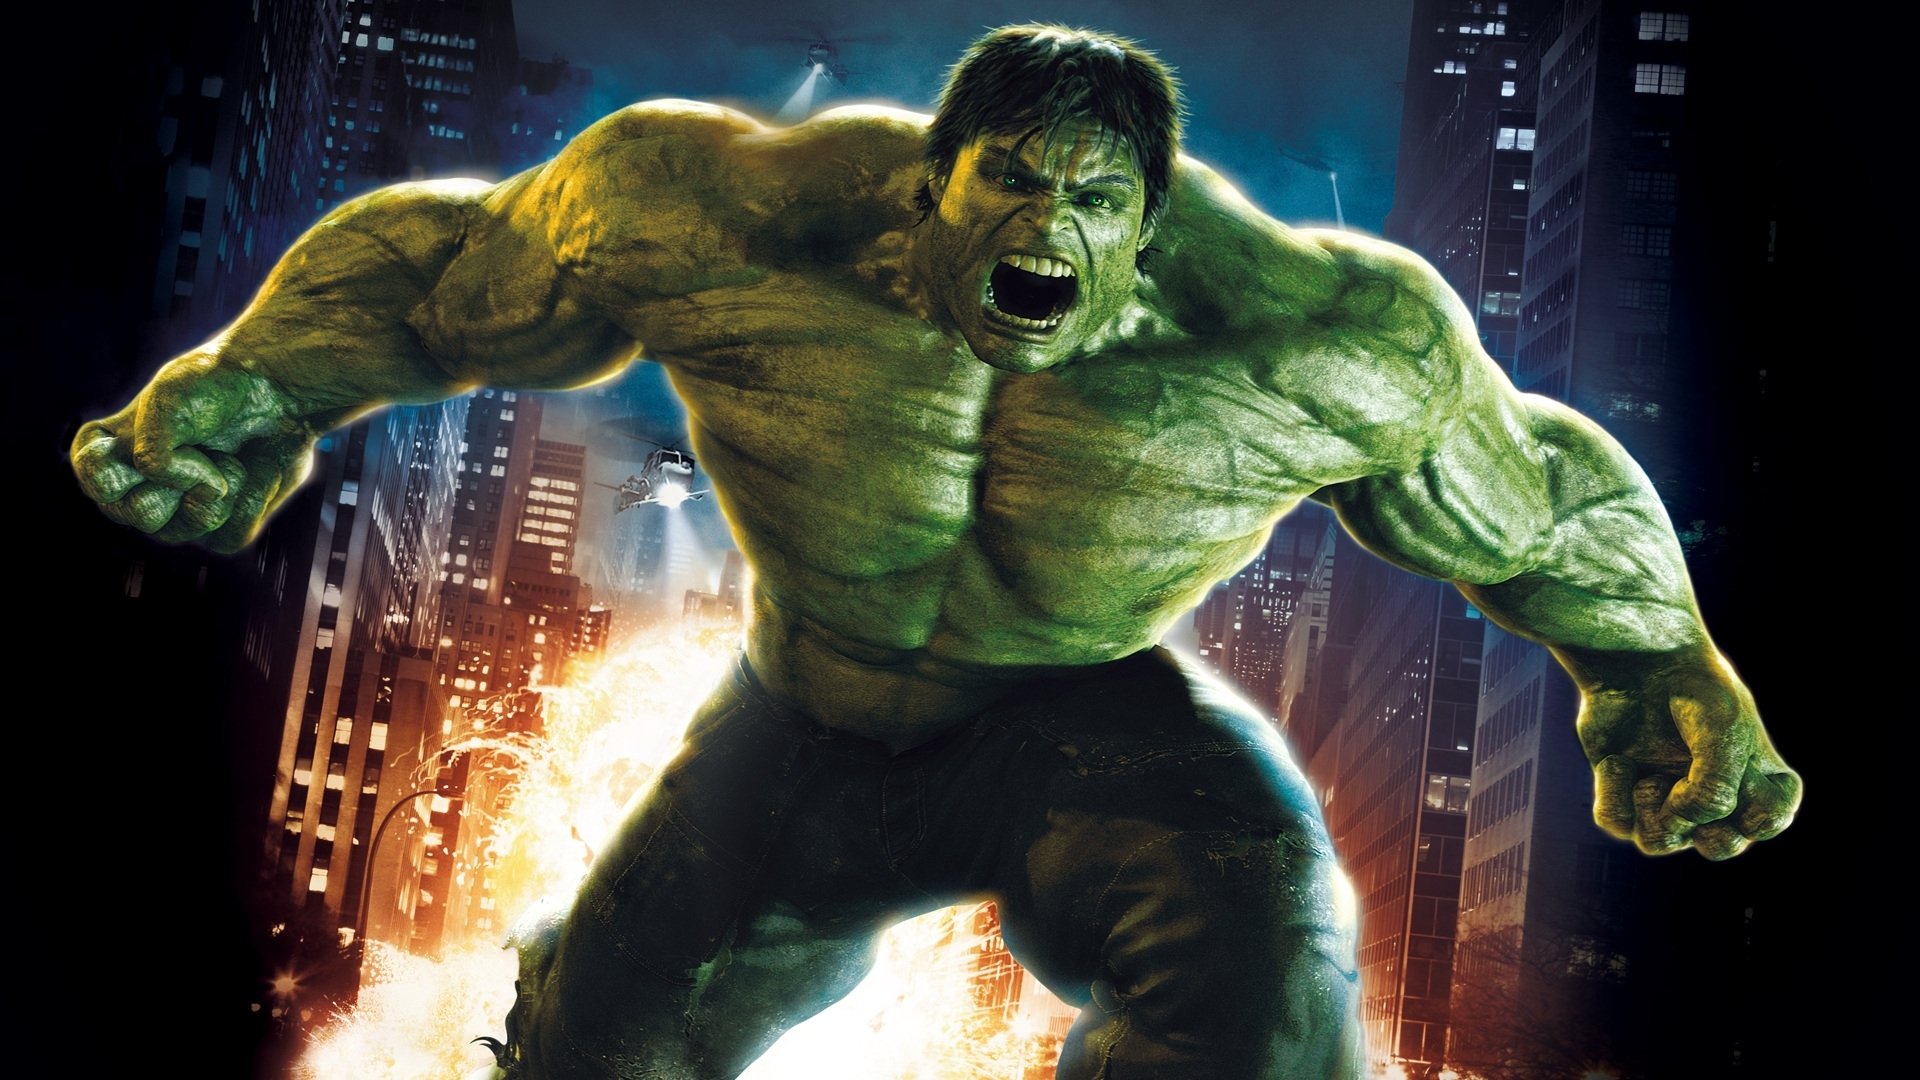 47+] The Incredible Hulk Desktop Wallpaper - WallpaperSafari